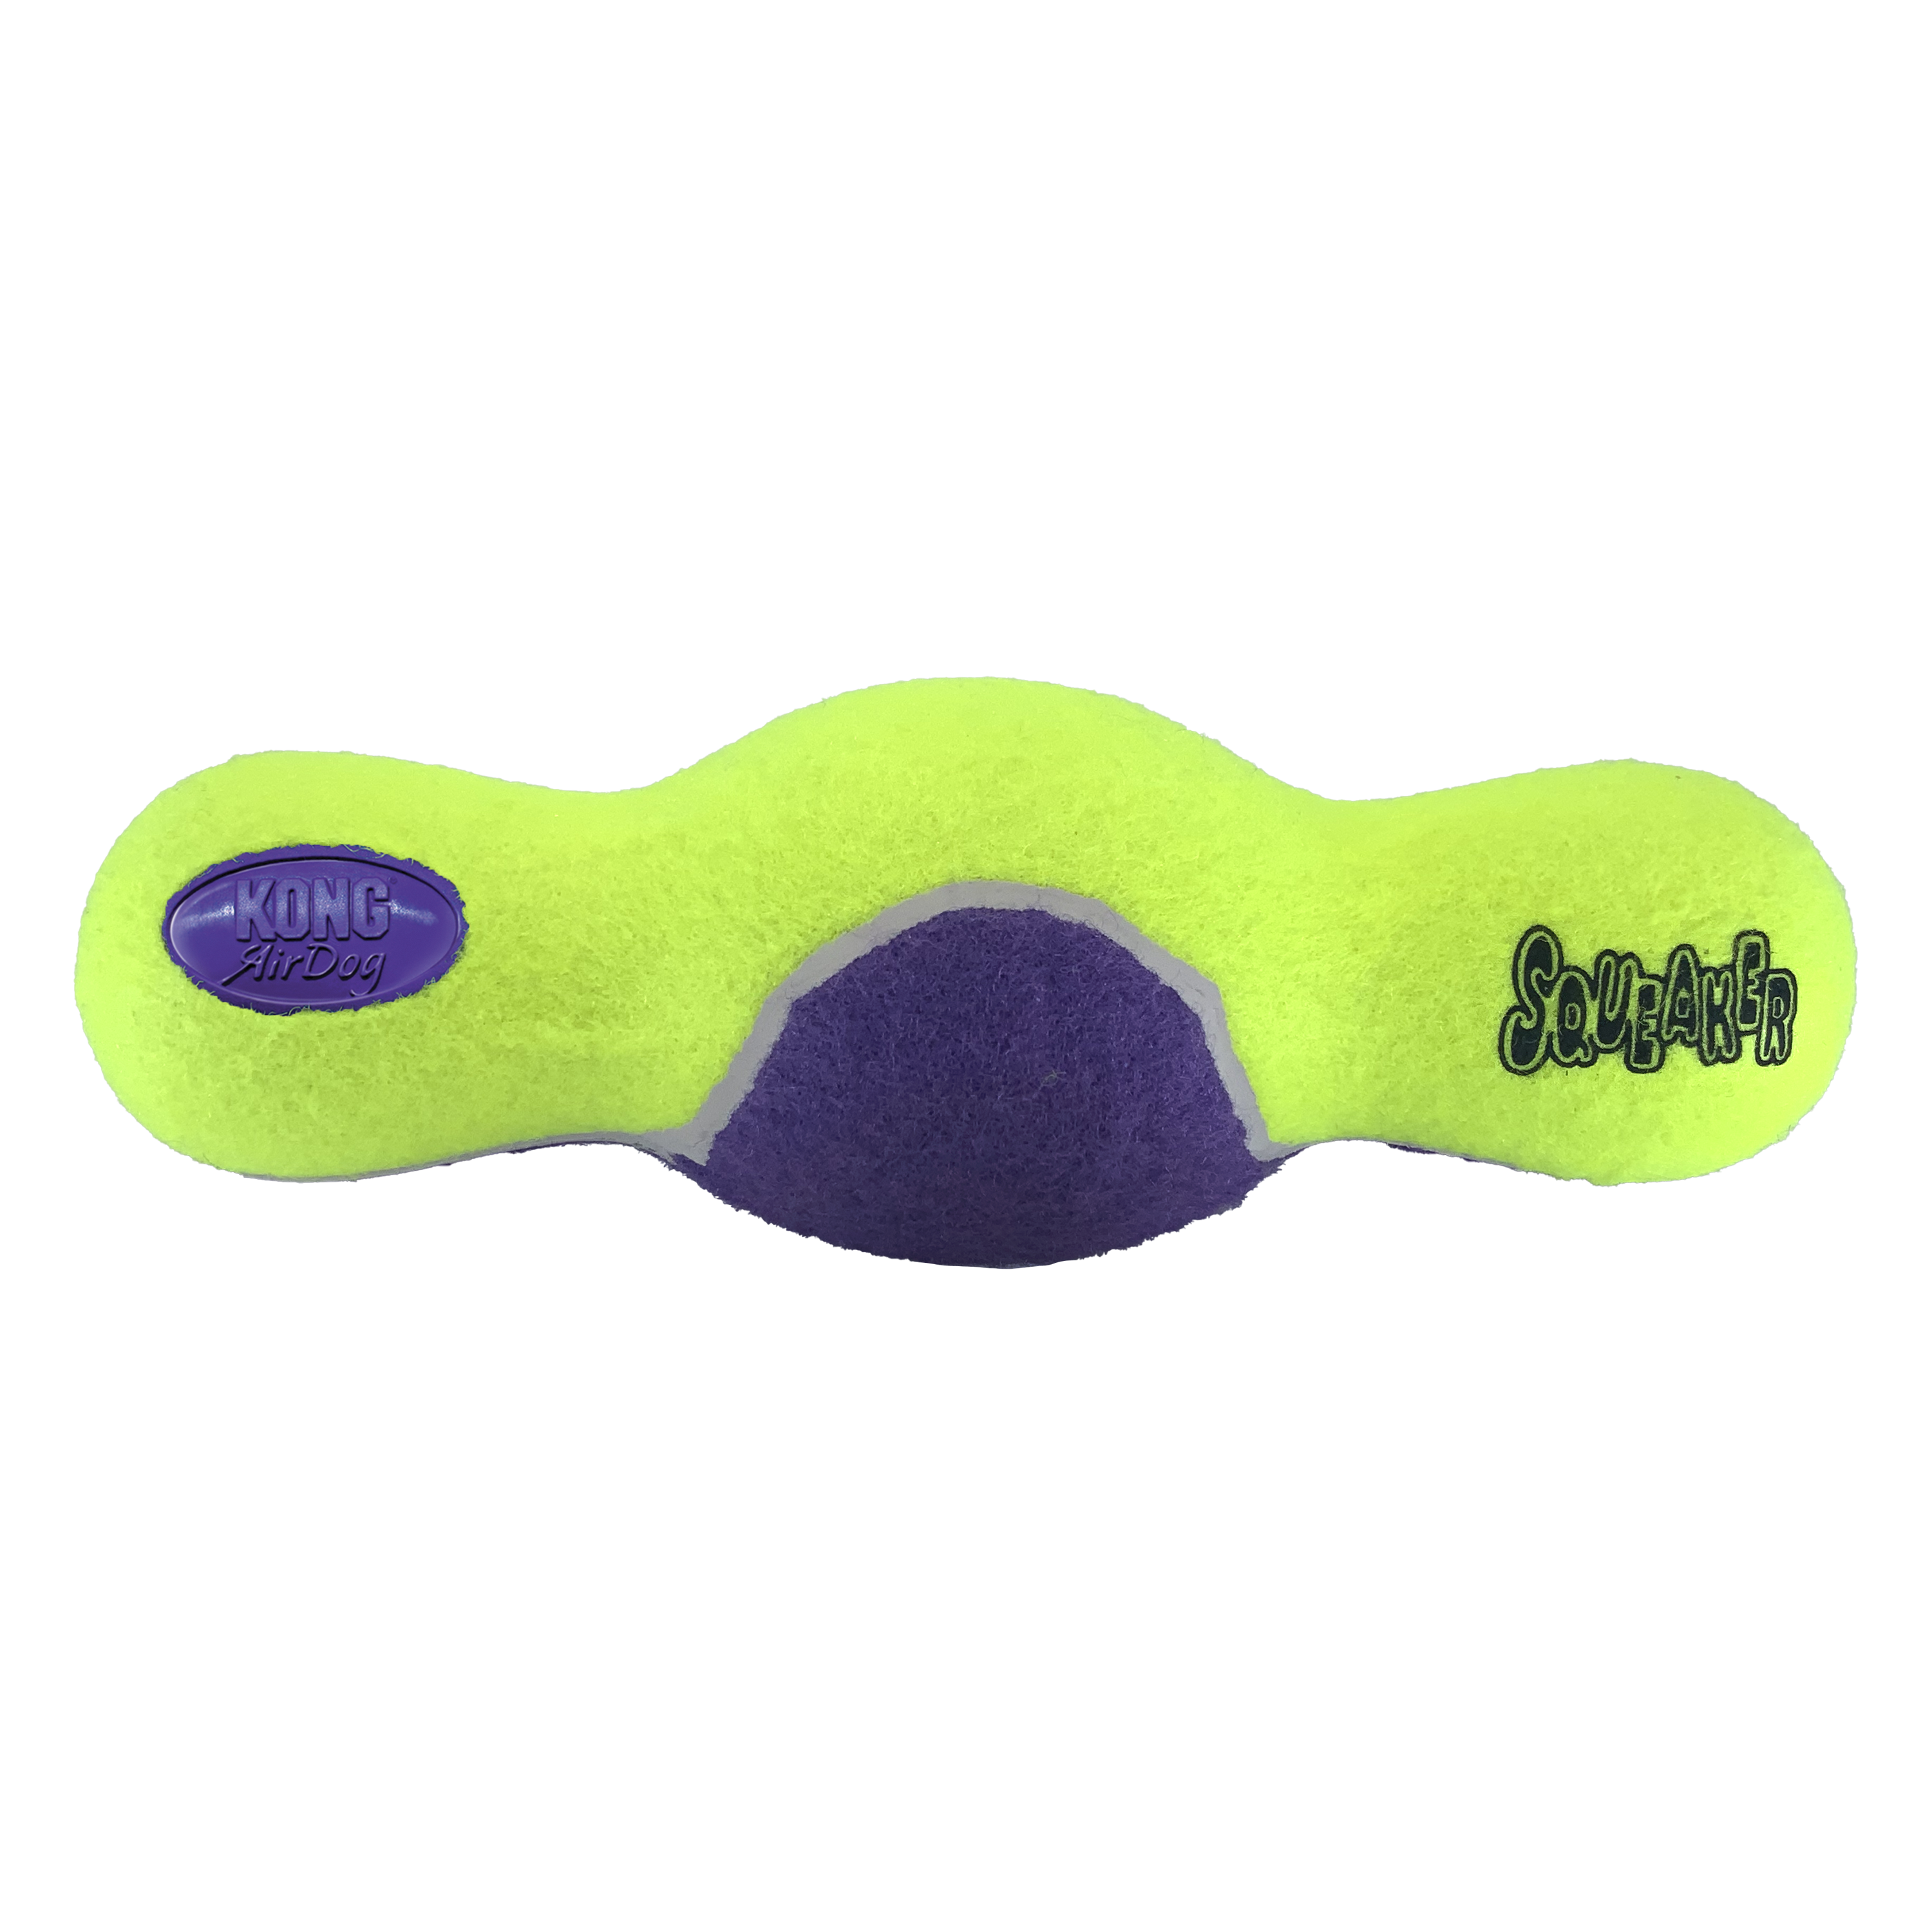 AirDog Squeaker Roller aus der Verpackung Produktbild